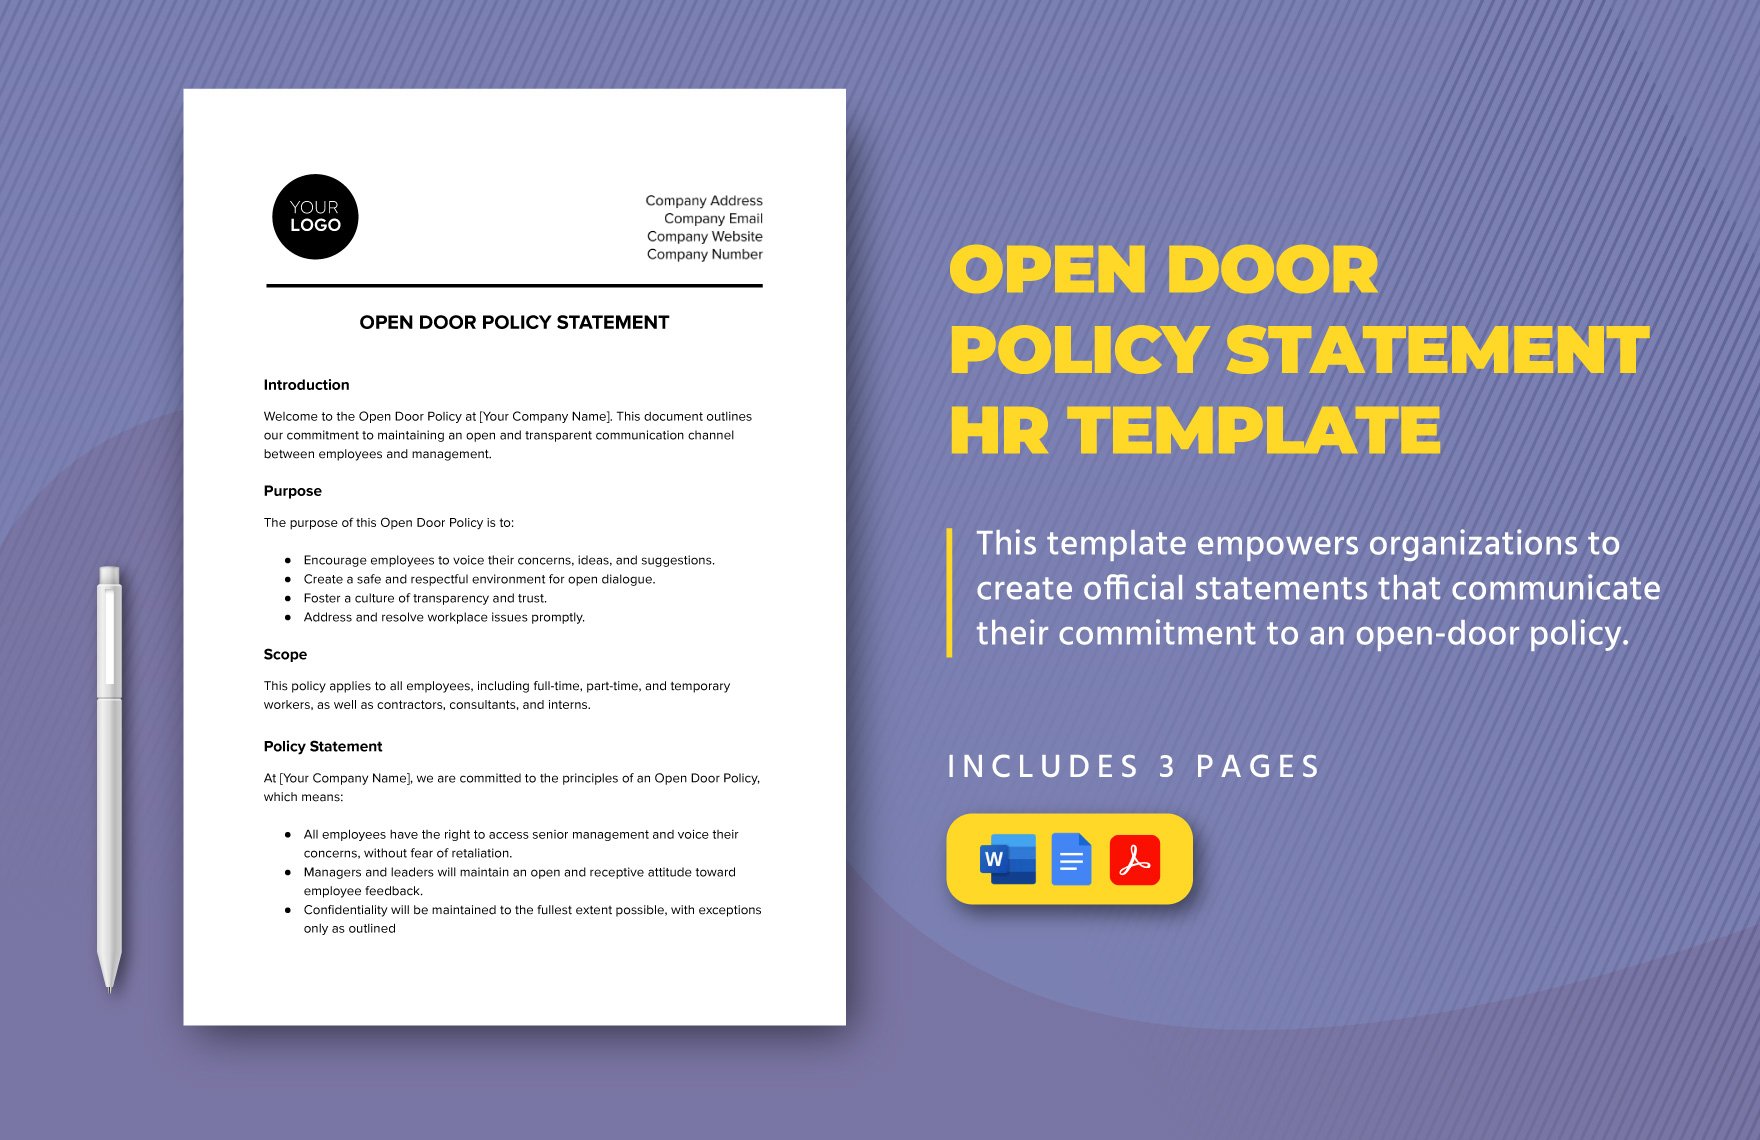 Open Door Policy Statement HR Template